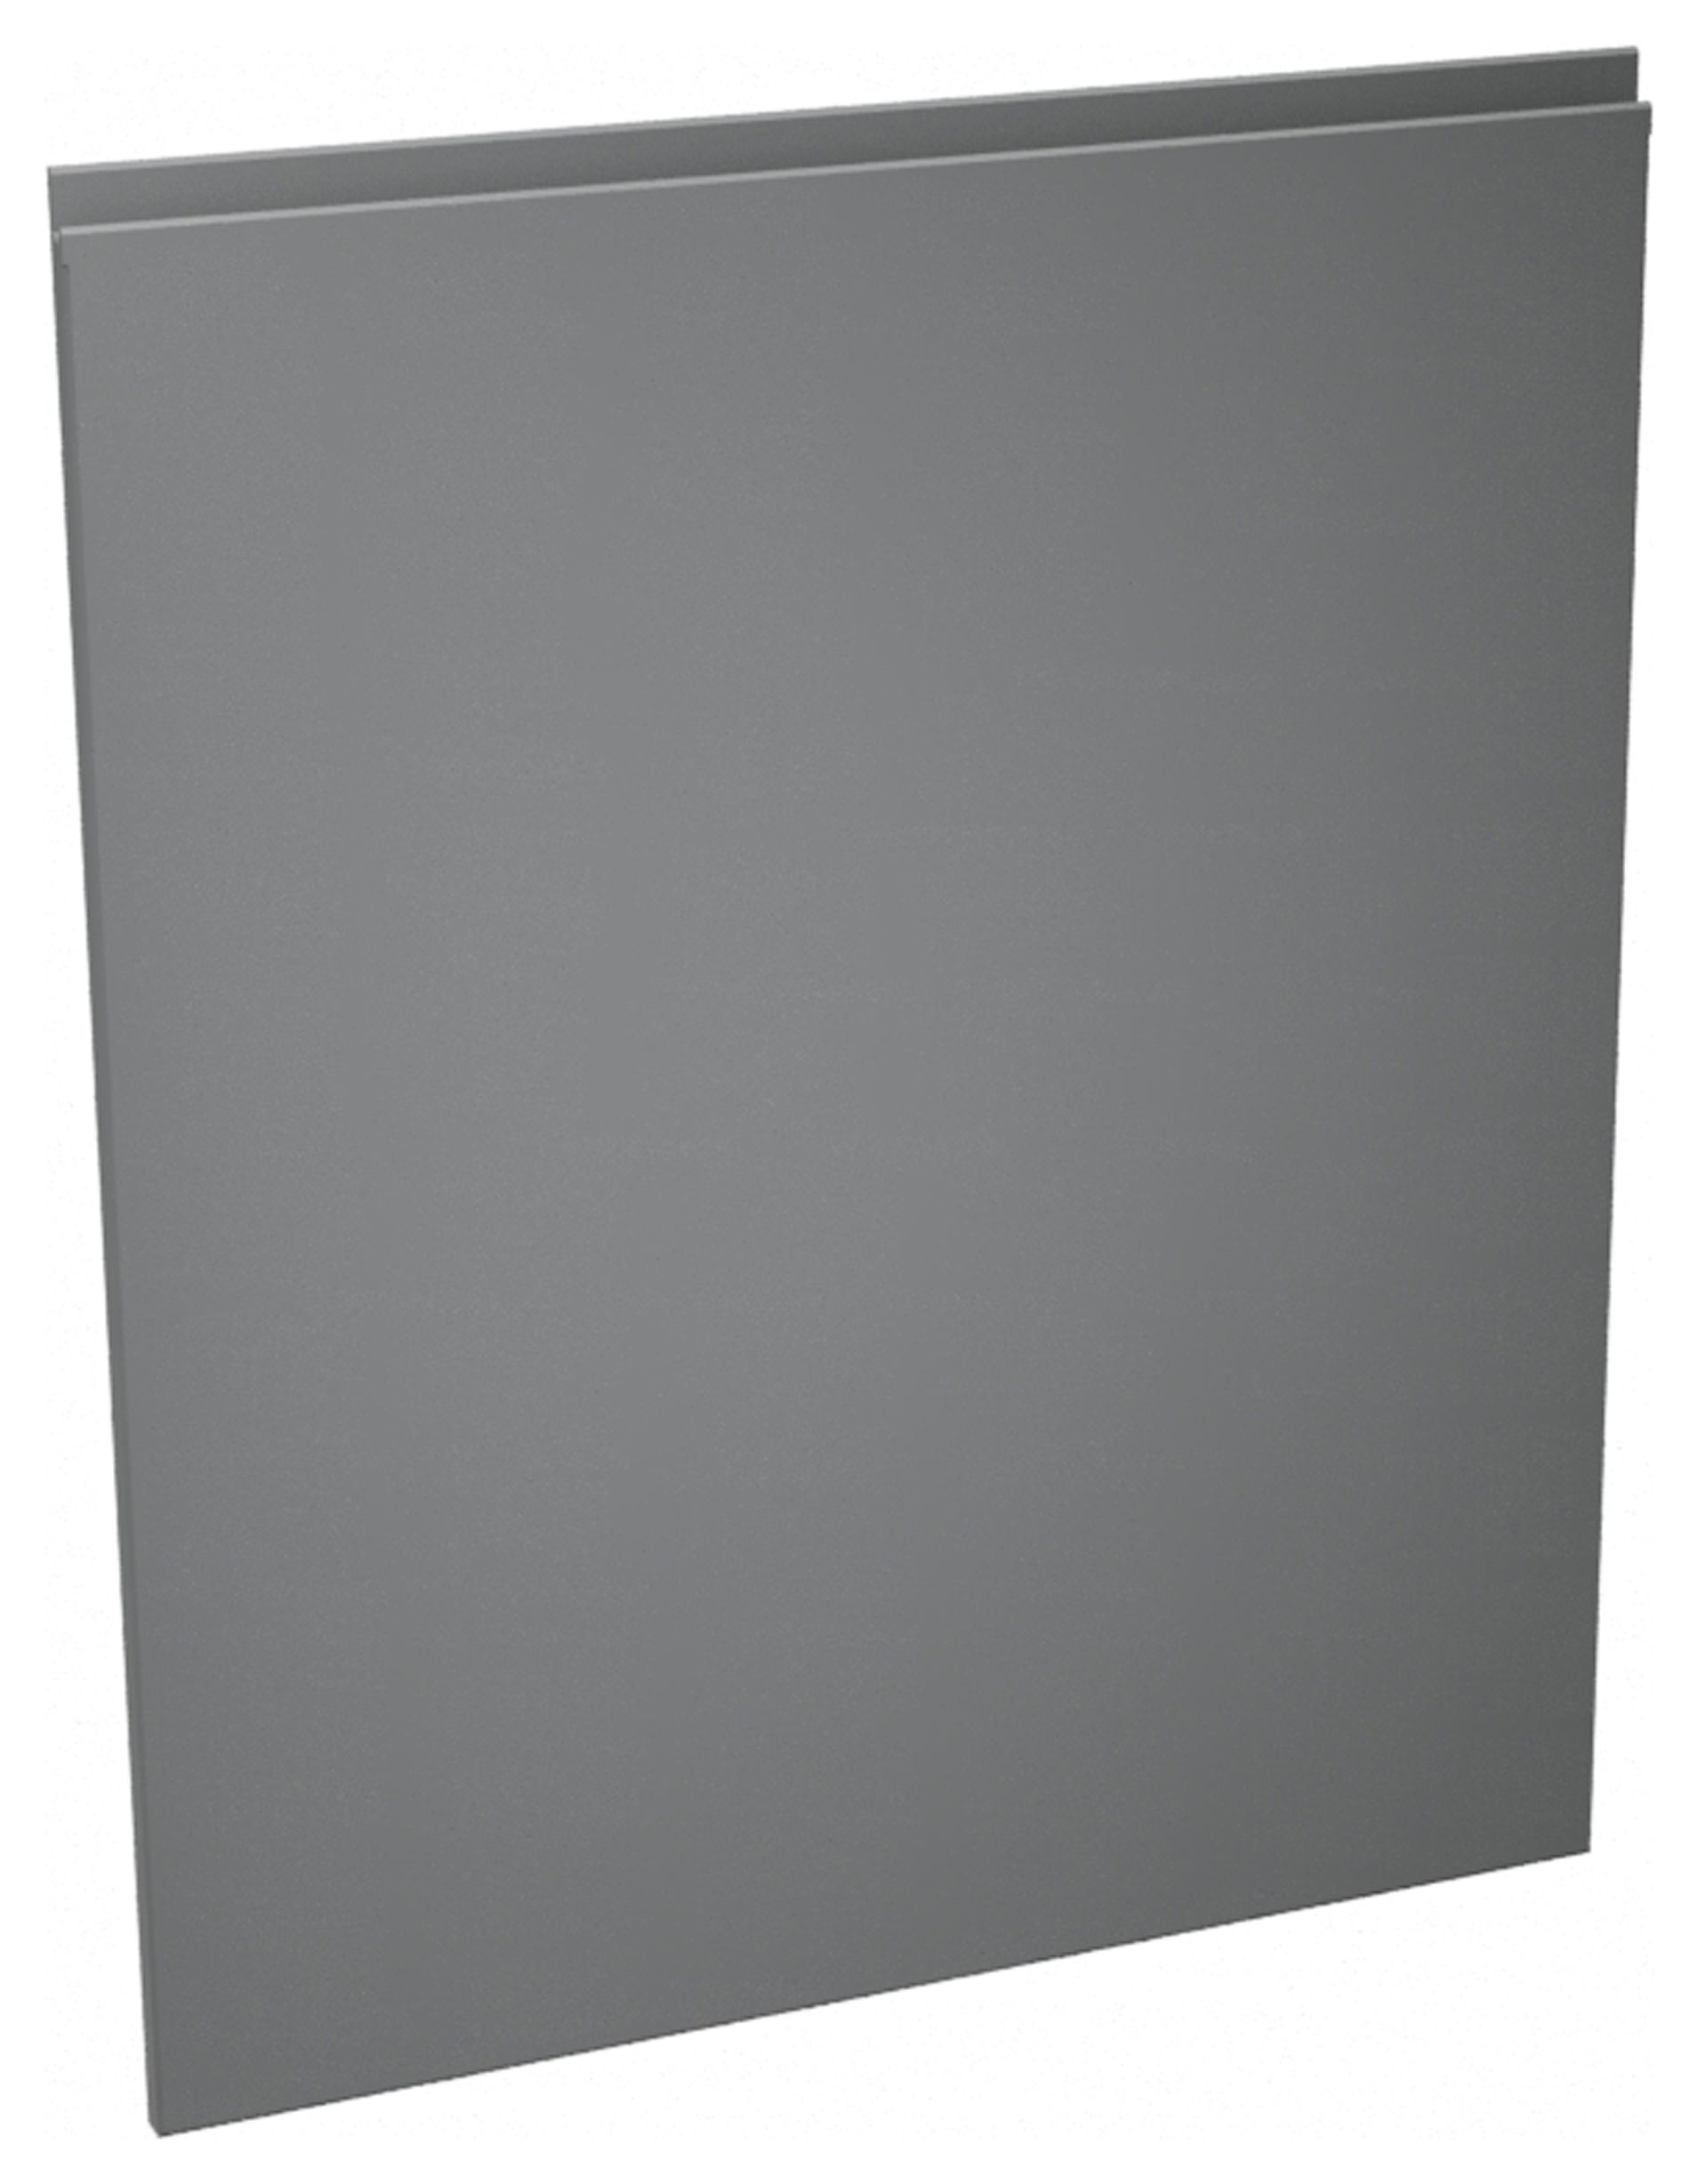 Camden Carbon 600mm Dishwasher Door